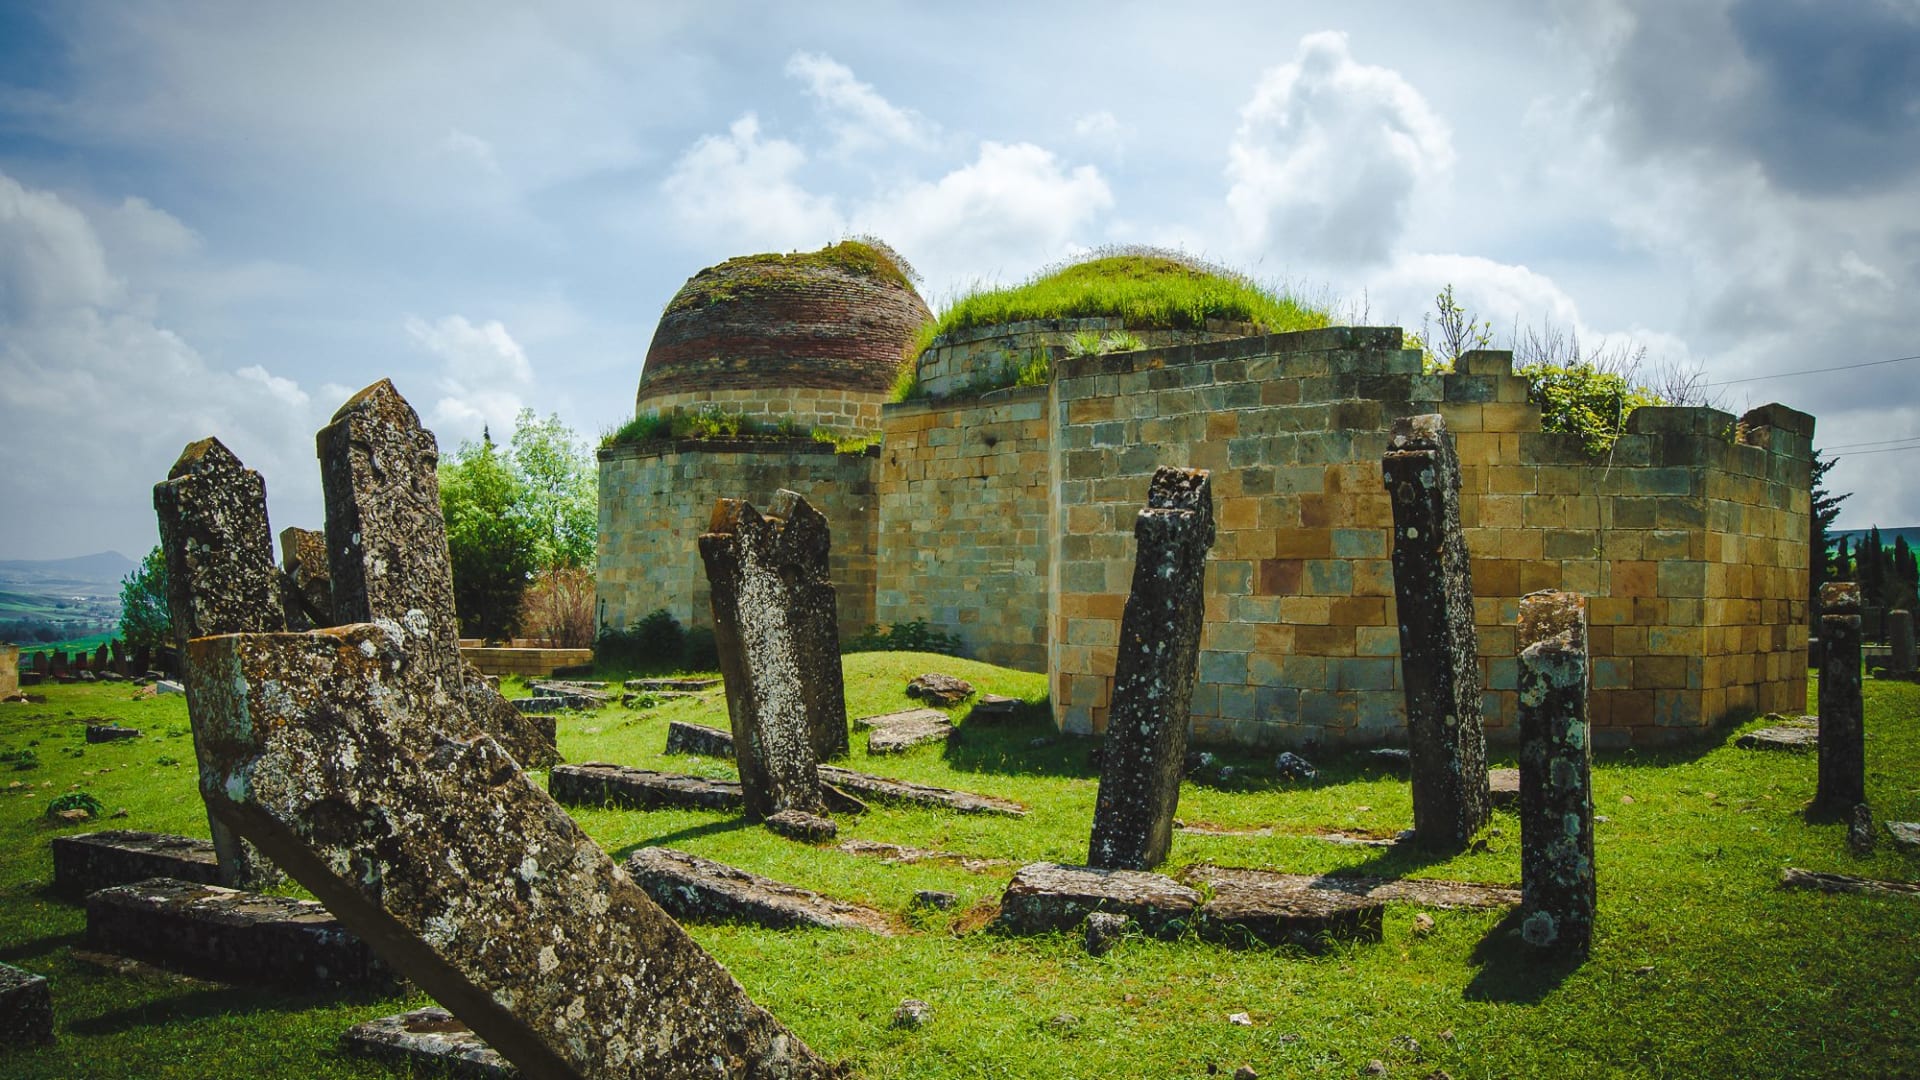 في أذربيجان، استكشف مقبرة القباب السبع.